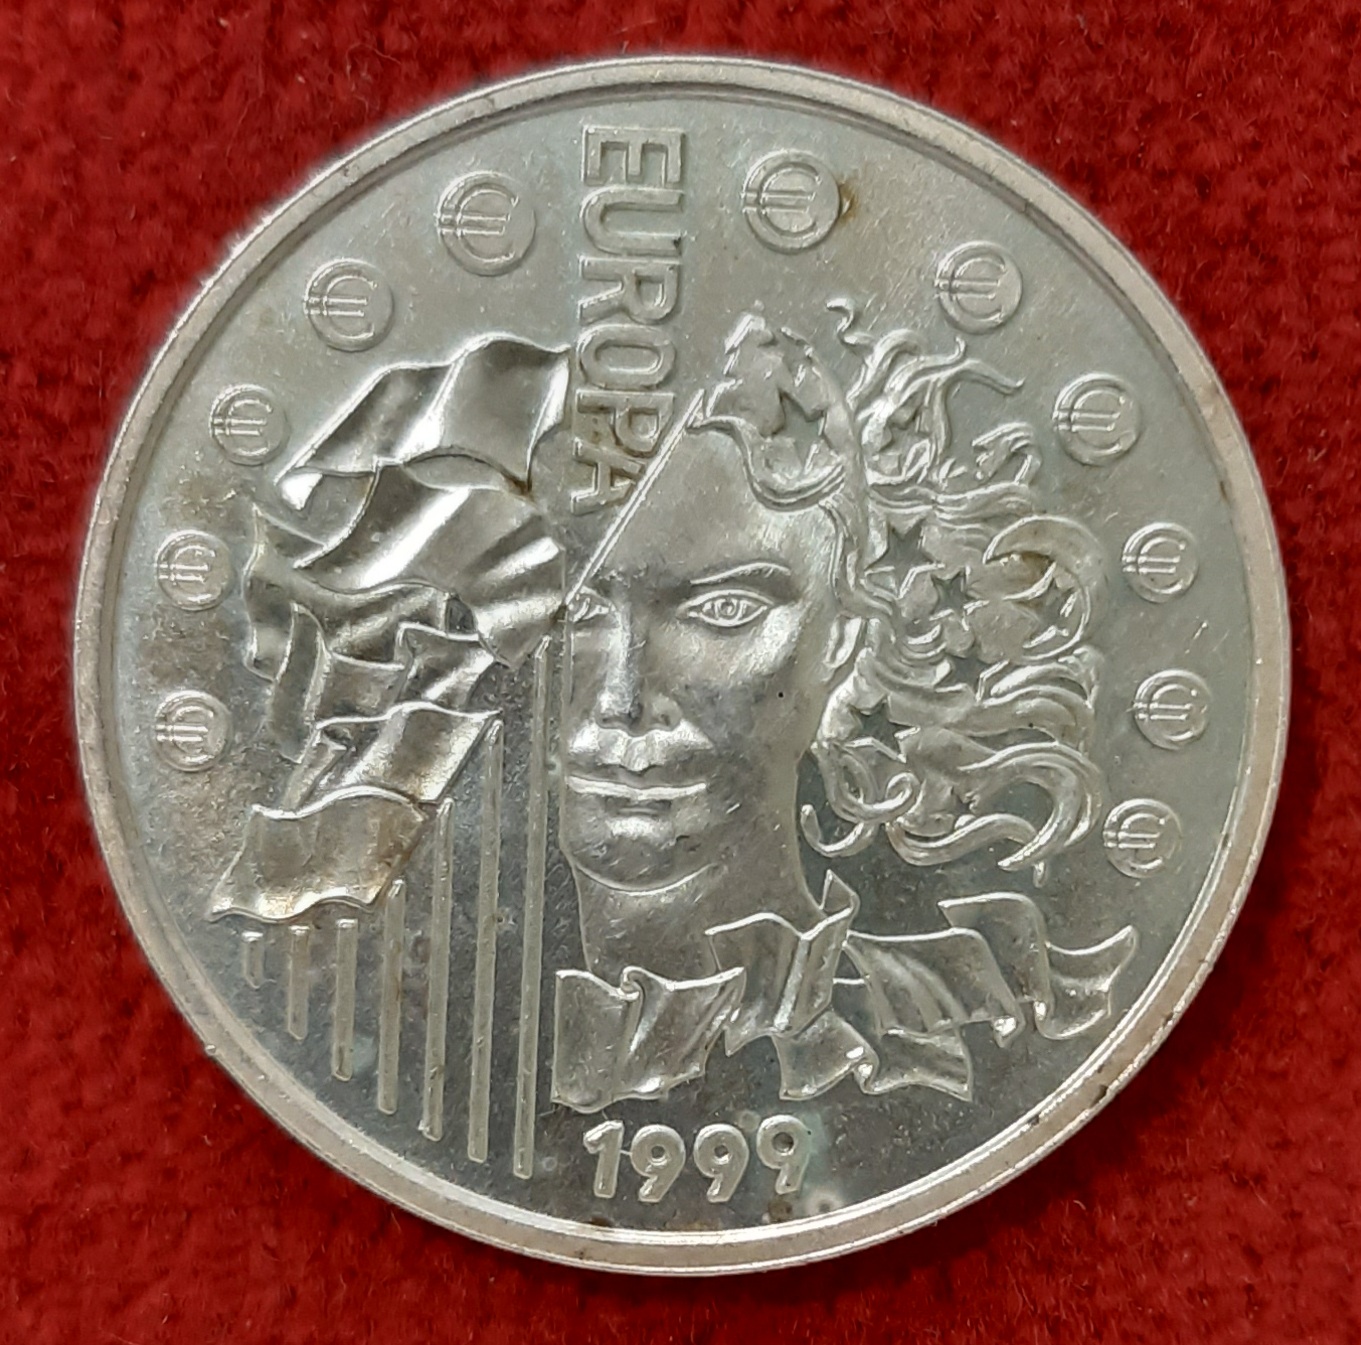 Europa. Monnaie Parité Argent 1999 6,57 Francs